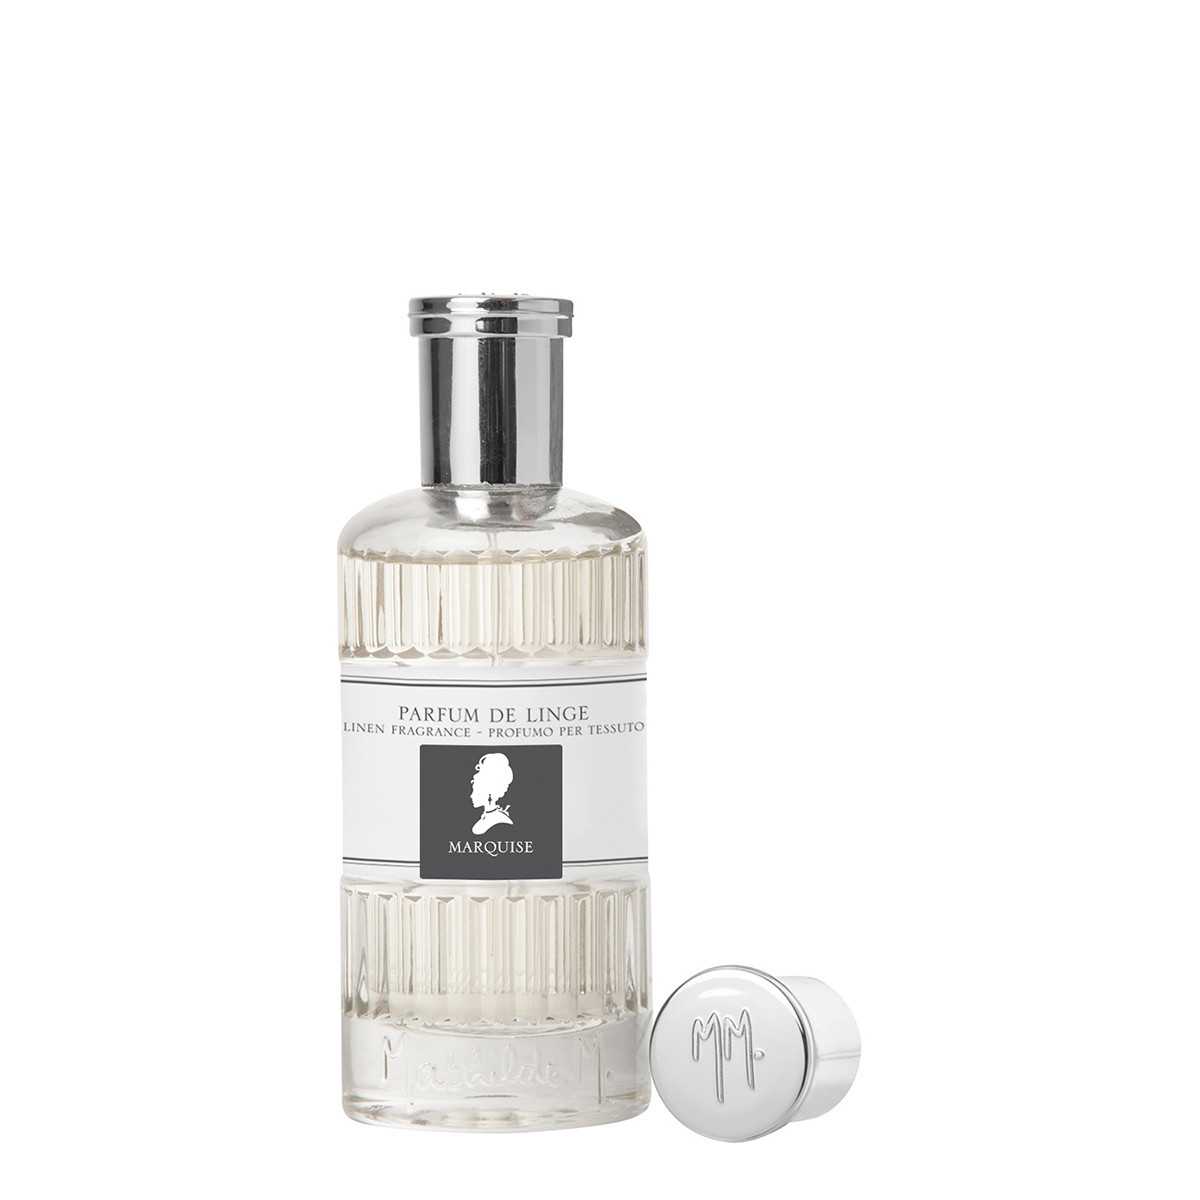 Perfume de lino 75 ml - Marquise